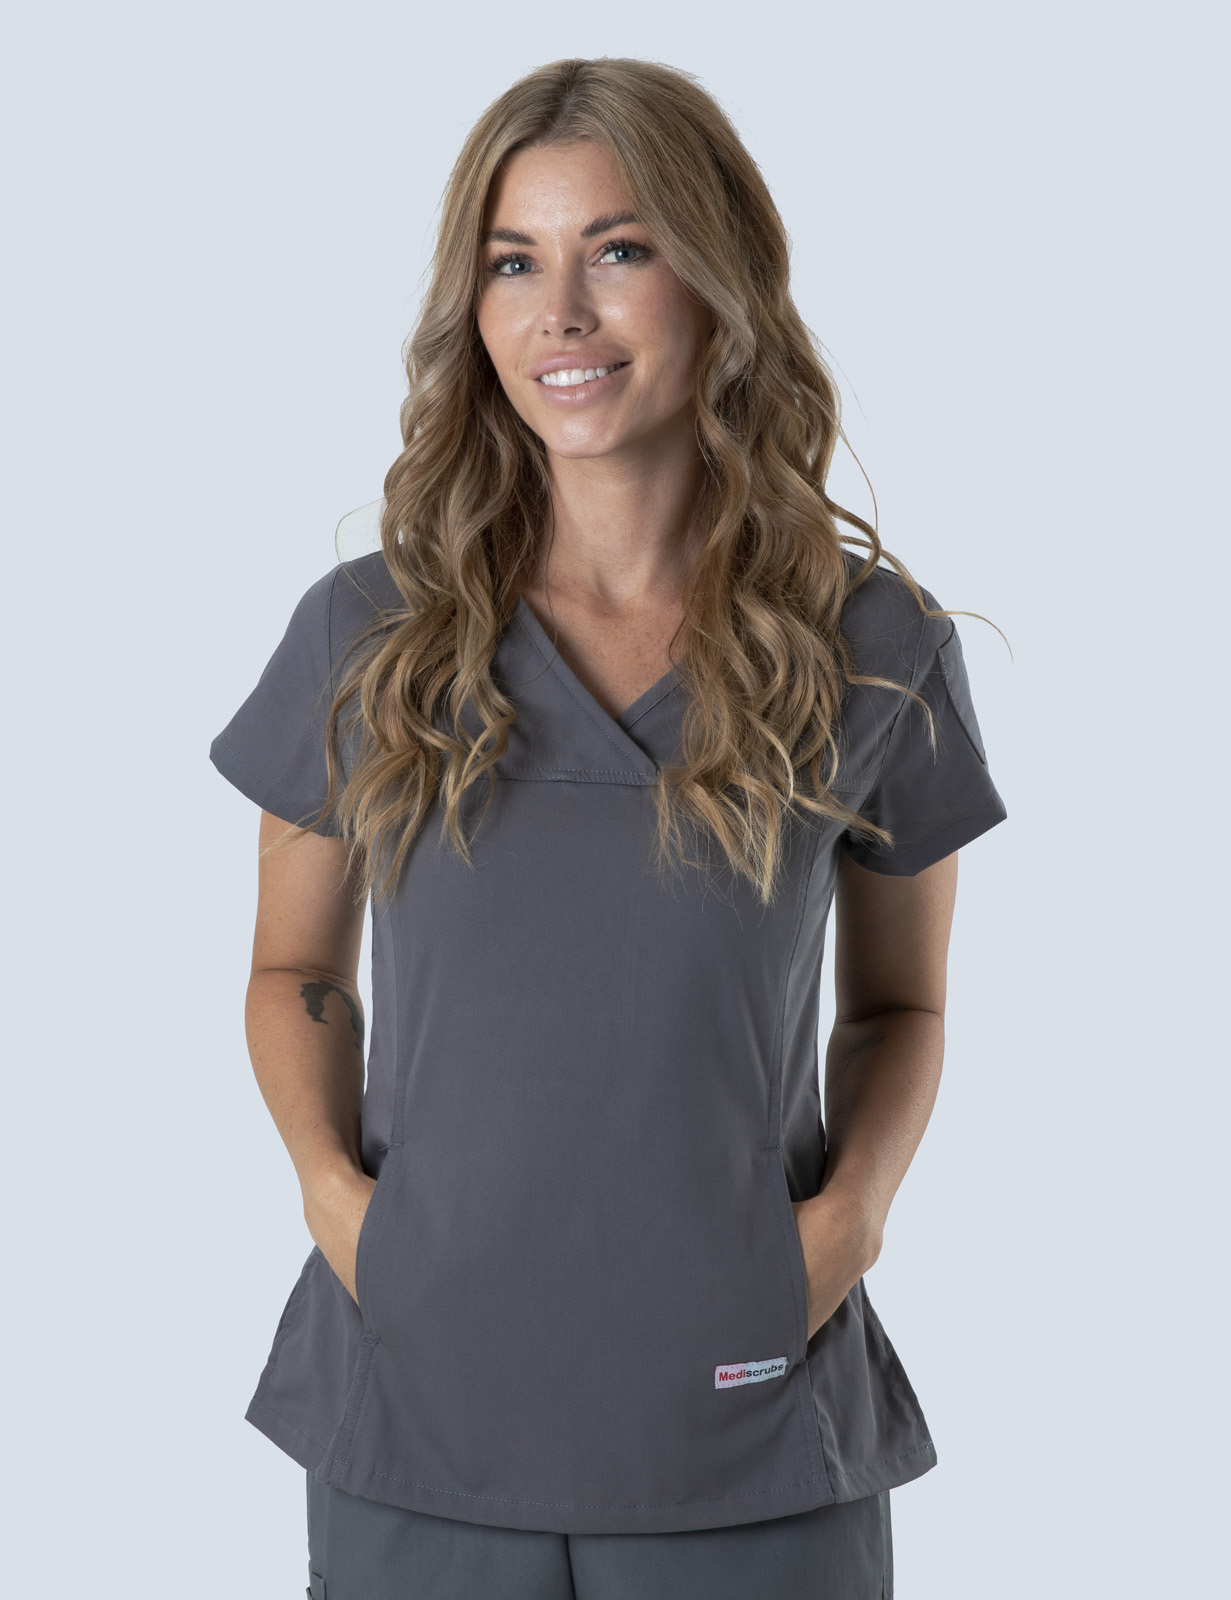 Queensland Children's Hospital Emergency Department Assistant in Nursing  Uniform Top Bundle  (Women's Fit Top in  Steel Grey incl Logos)